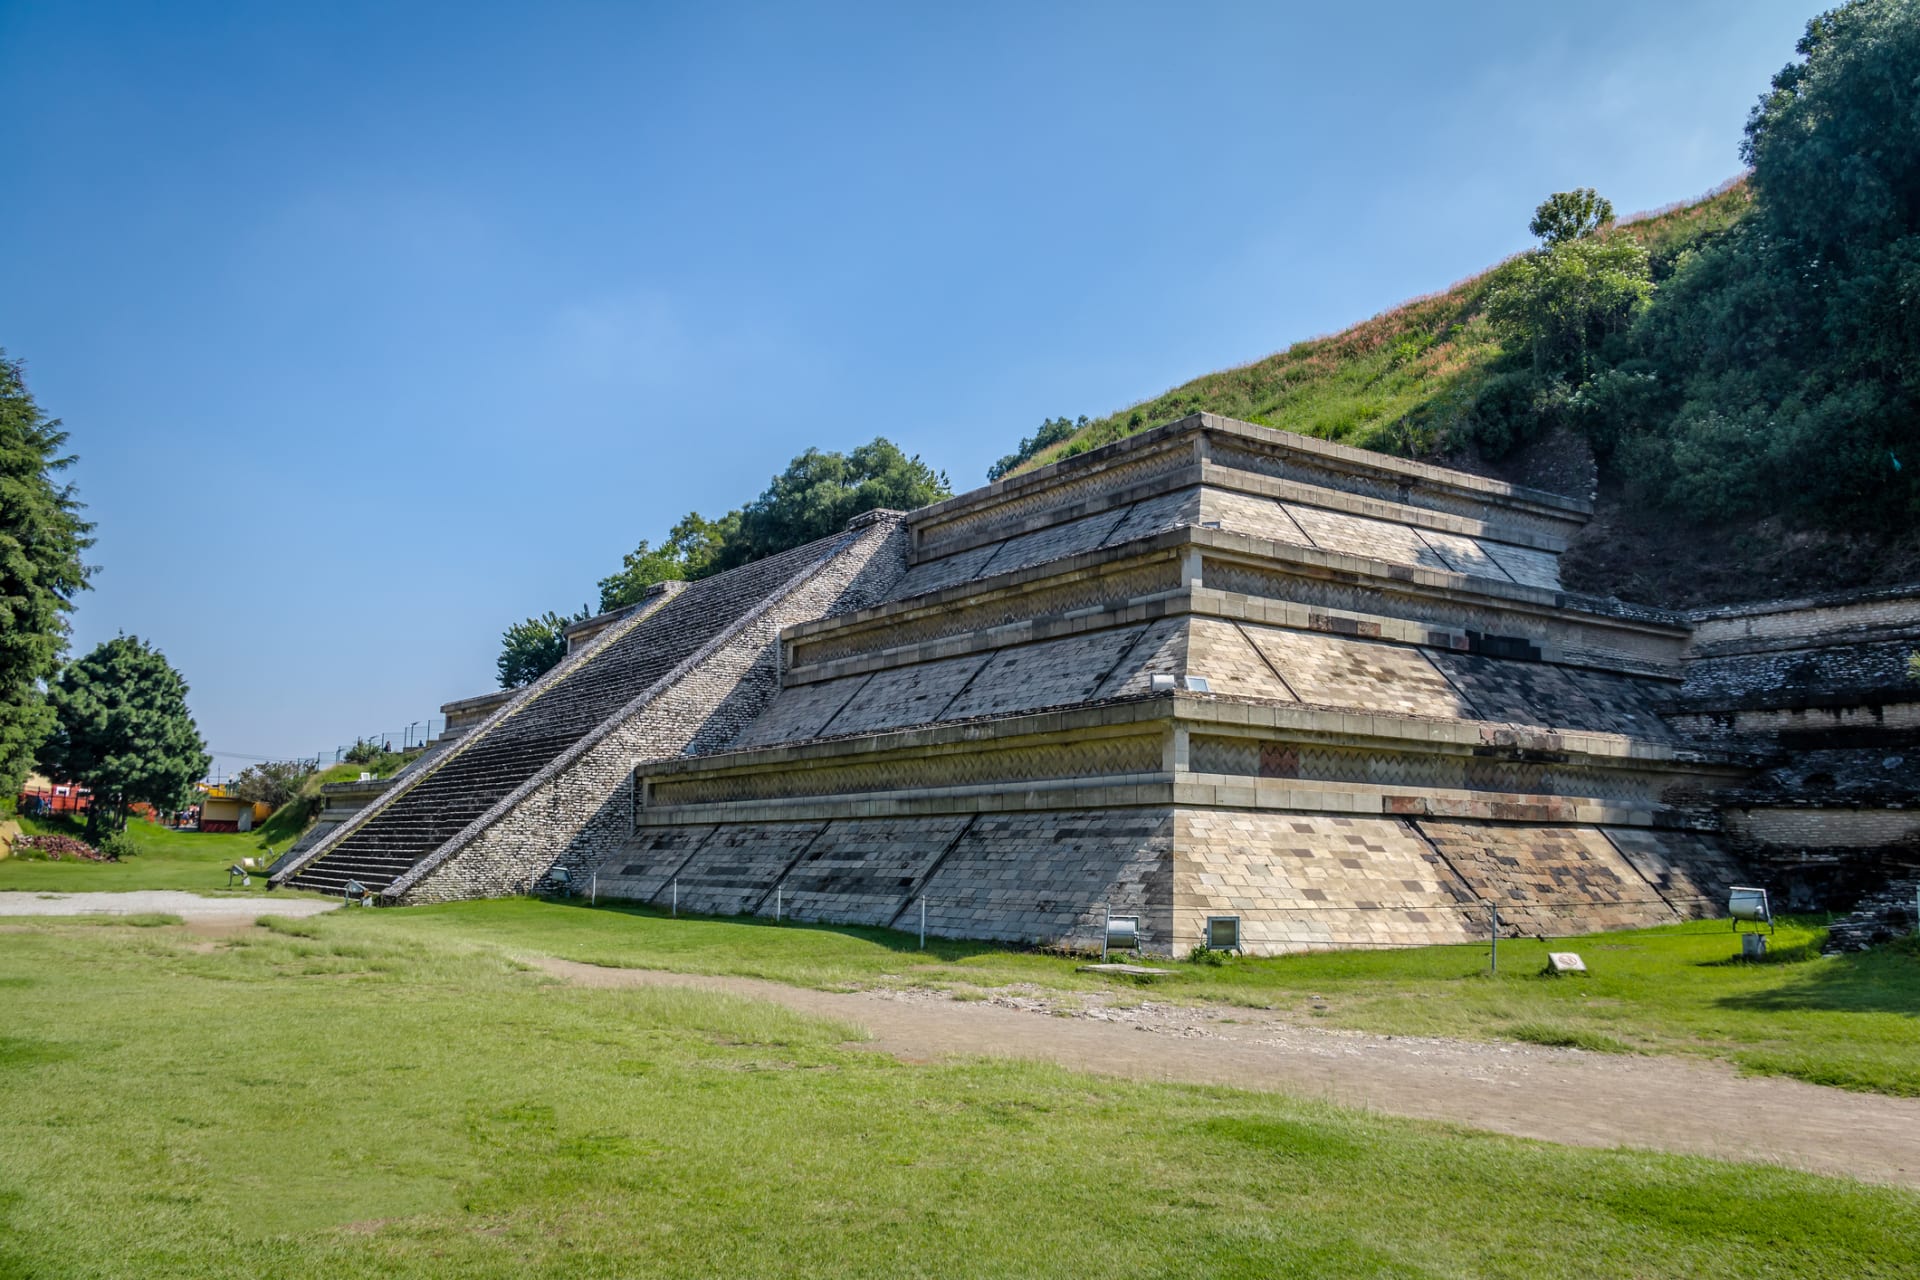 Zarostla pyramida do kopce přírodním vlivem, nebo ji tak chytře zamaskovali Aztékové?